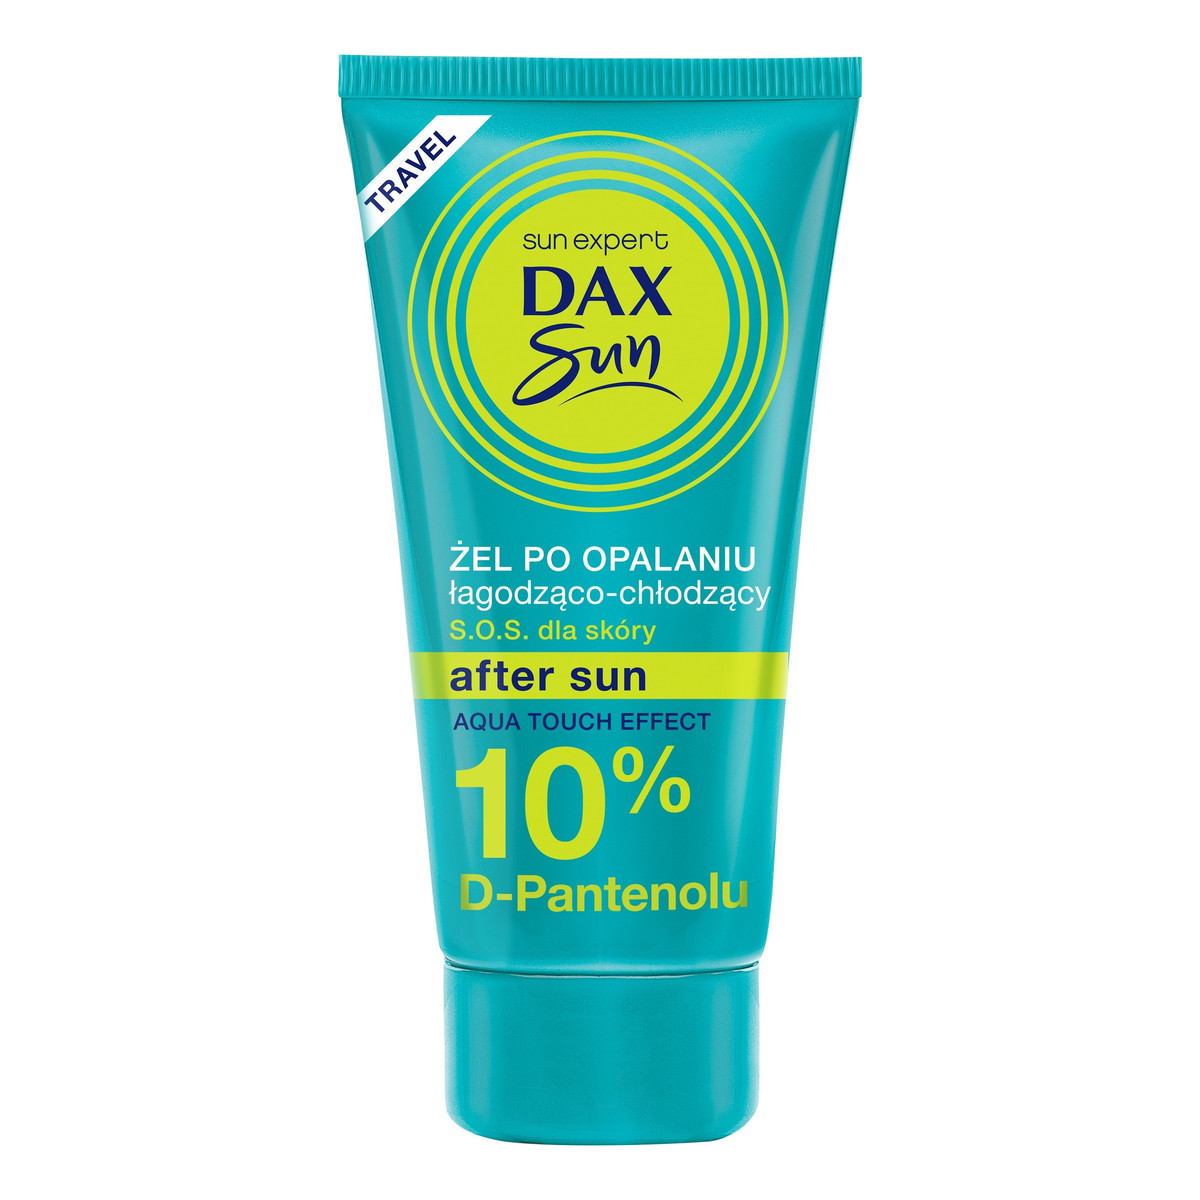 Dax Sun Travel Żel po opalaniu łagodząco-chłodzący z D-Pantenolem 10% 50ml